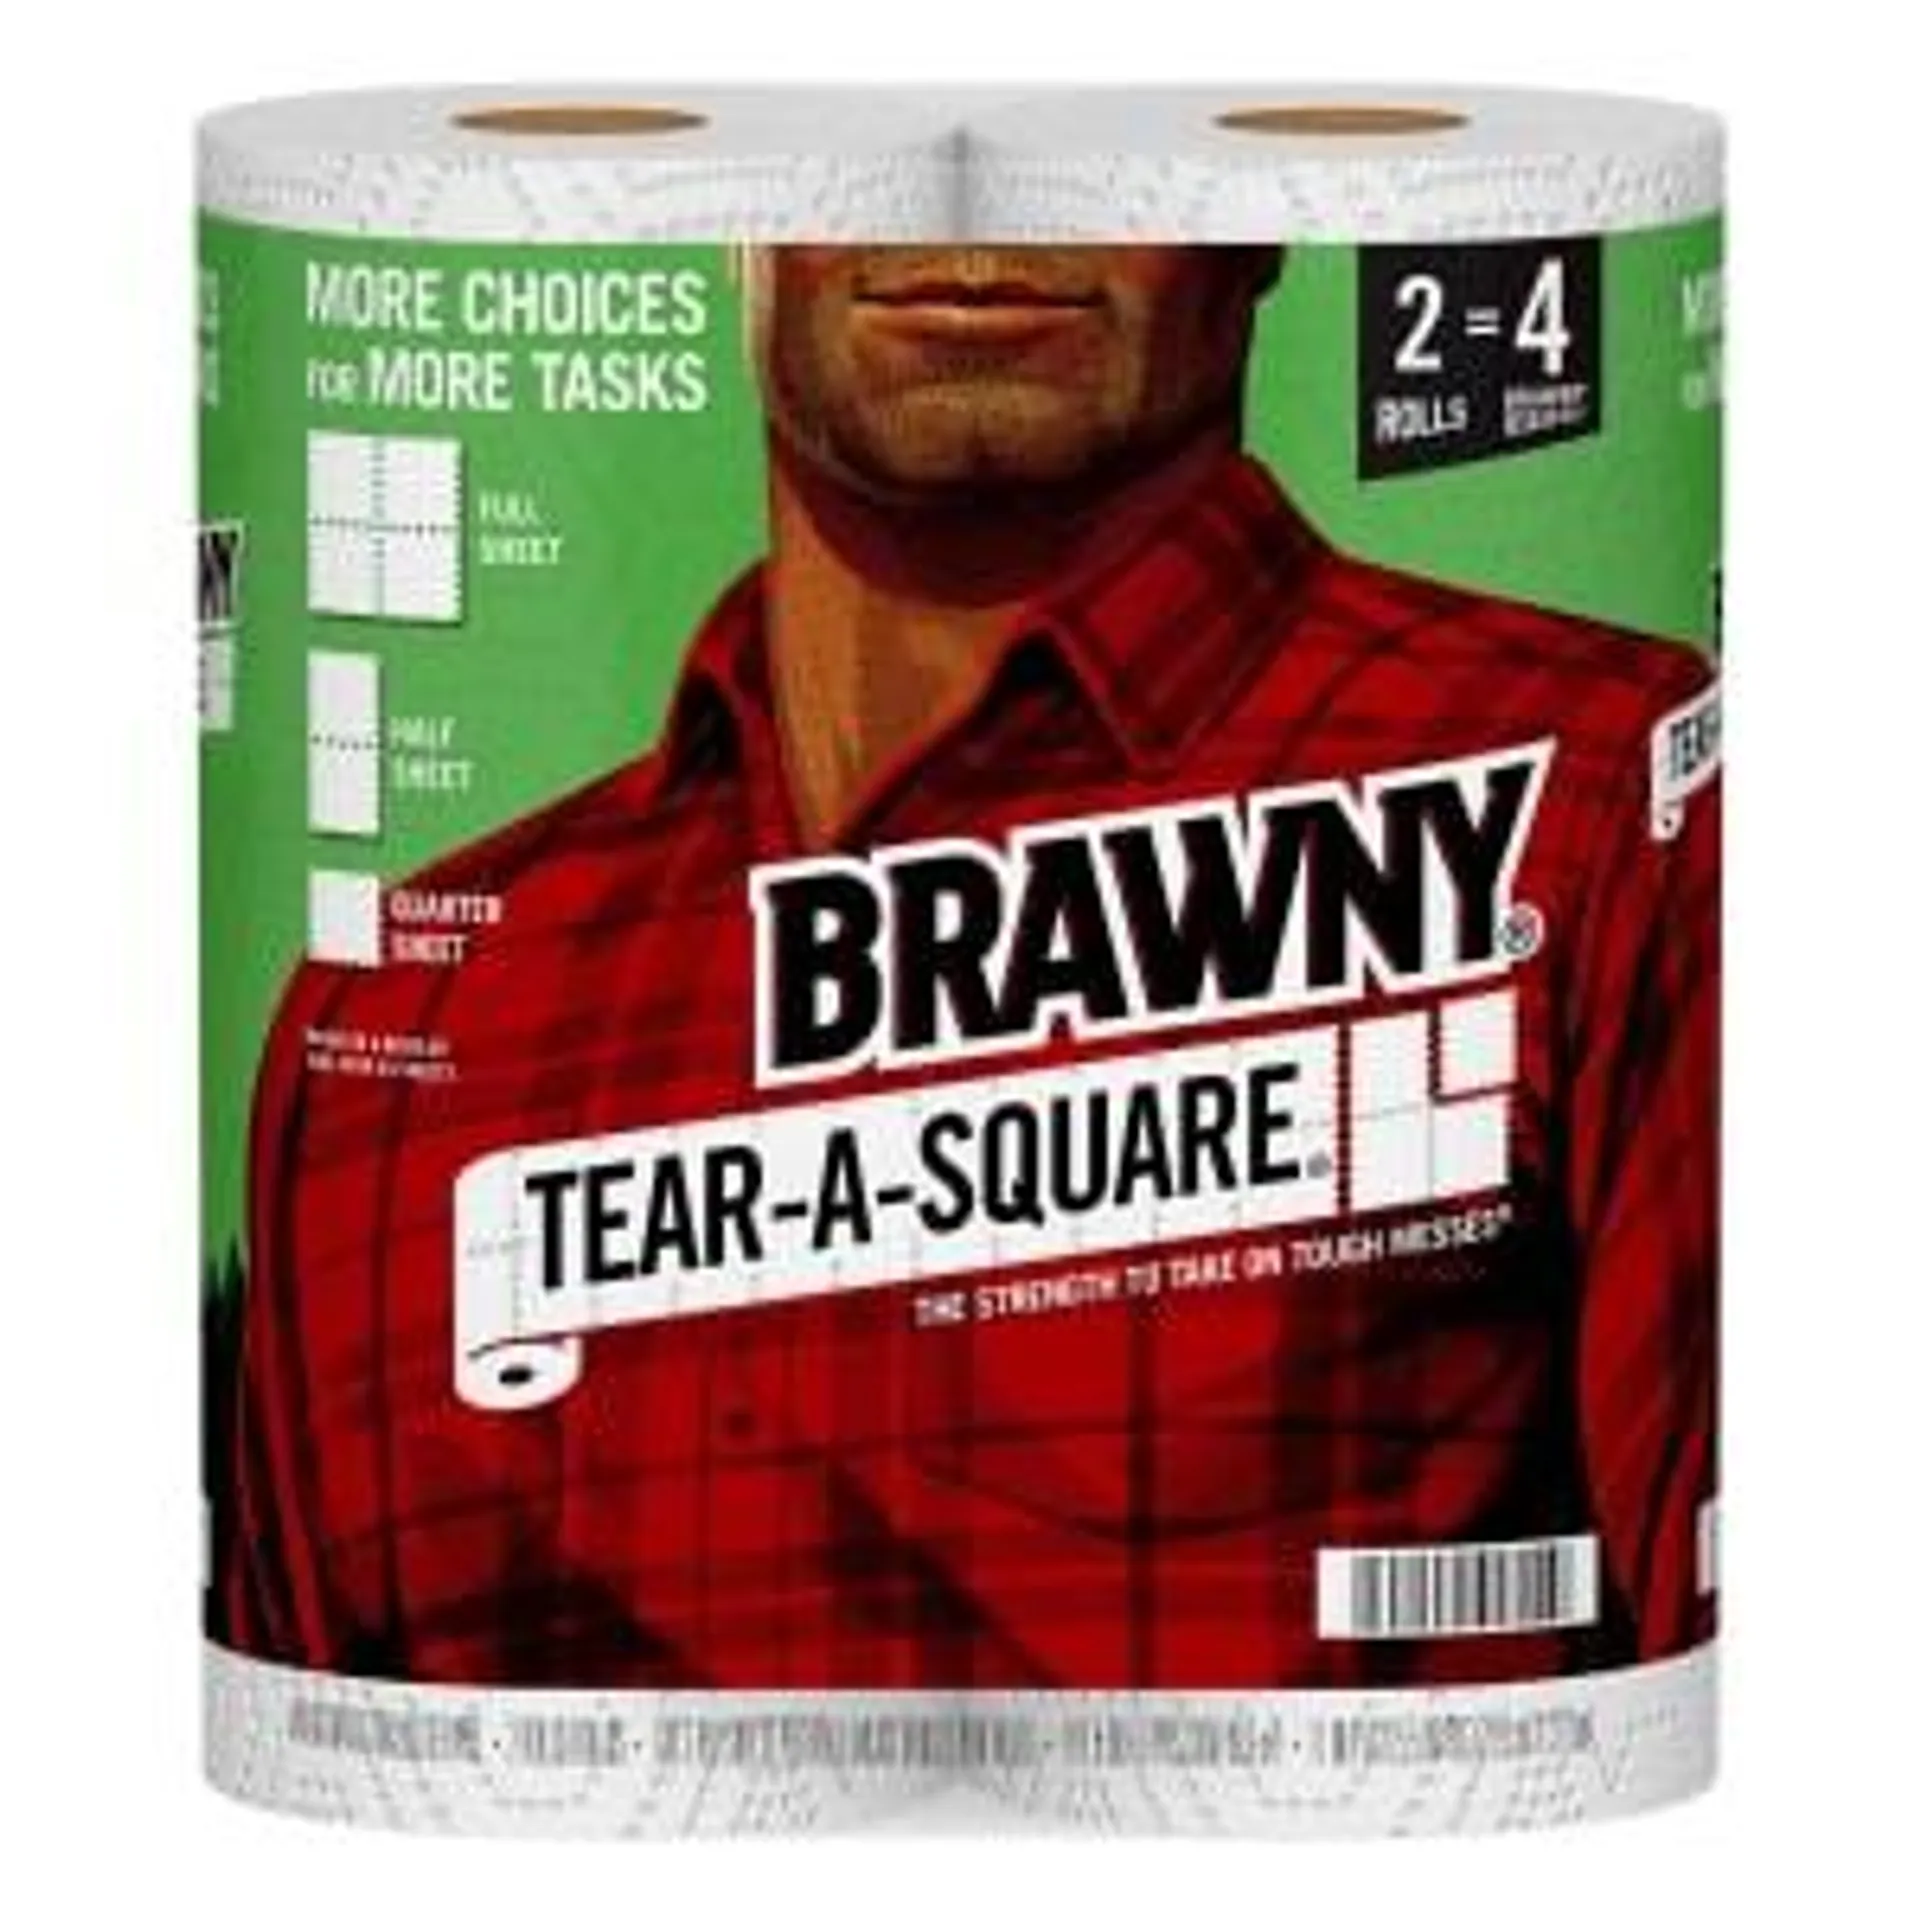 Brawny Tear-A-Square Paper Towels, 2 Rolls